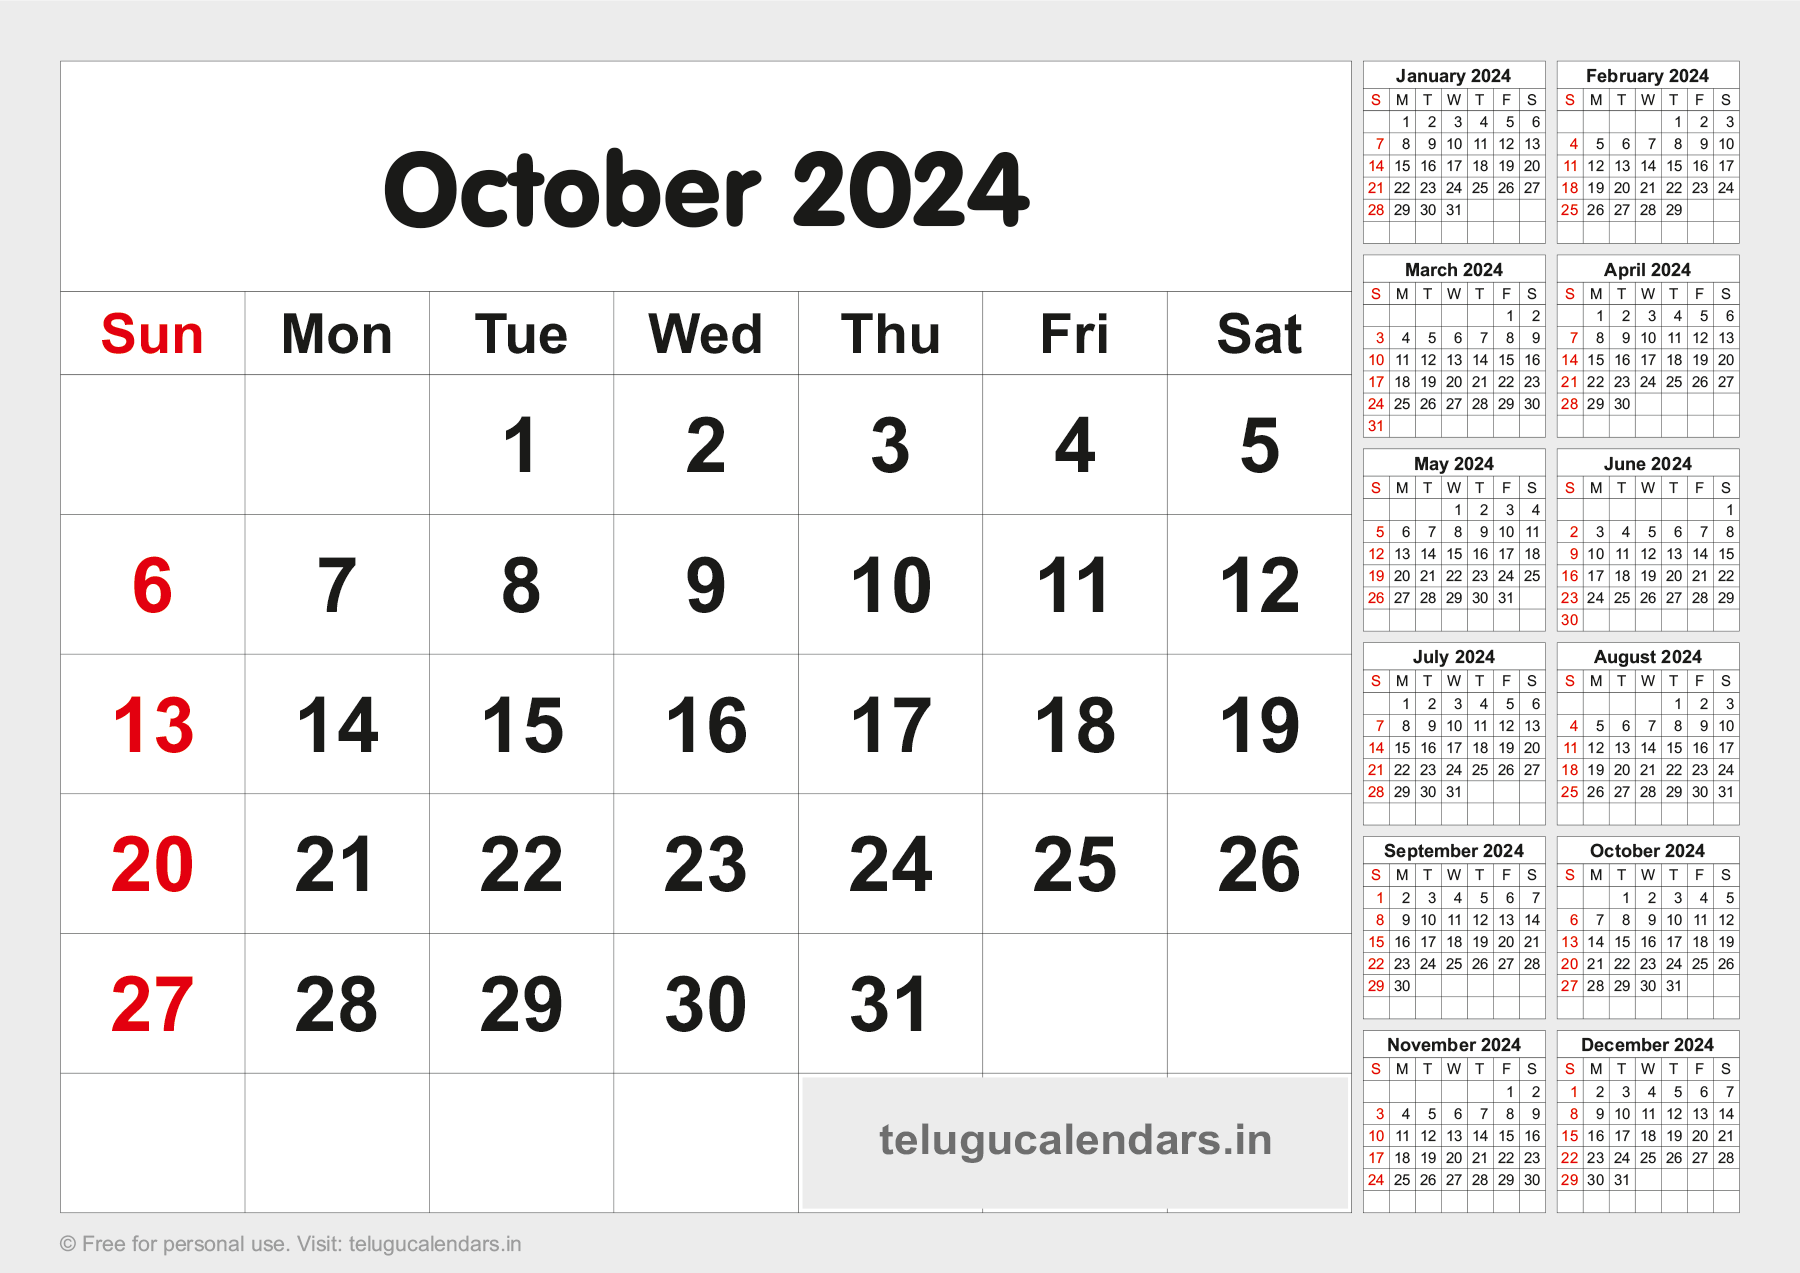 Telugu Blank Calendar 2024 October 2023 Telugu Calendar PDF